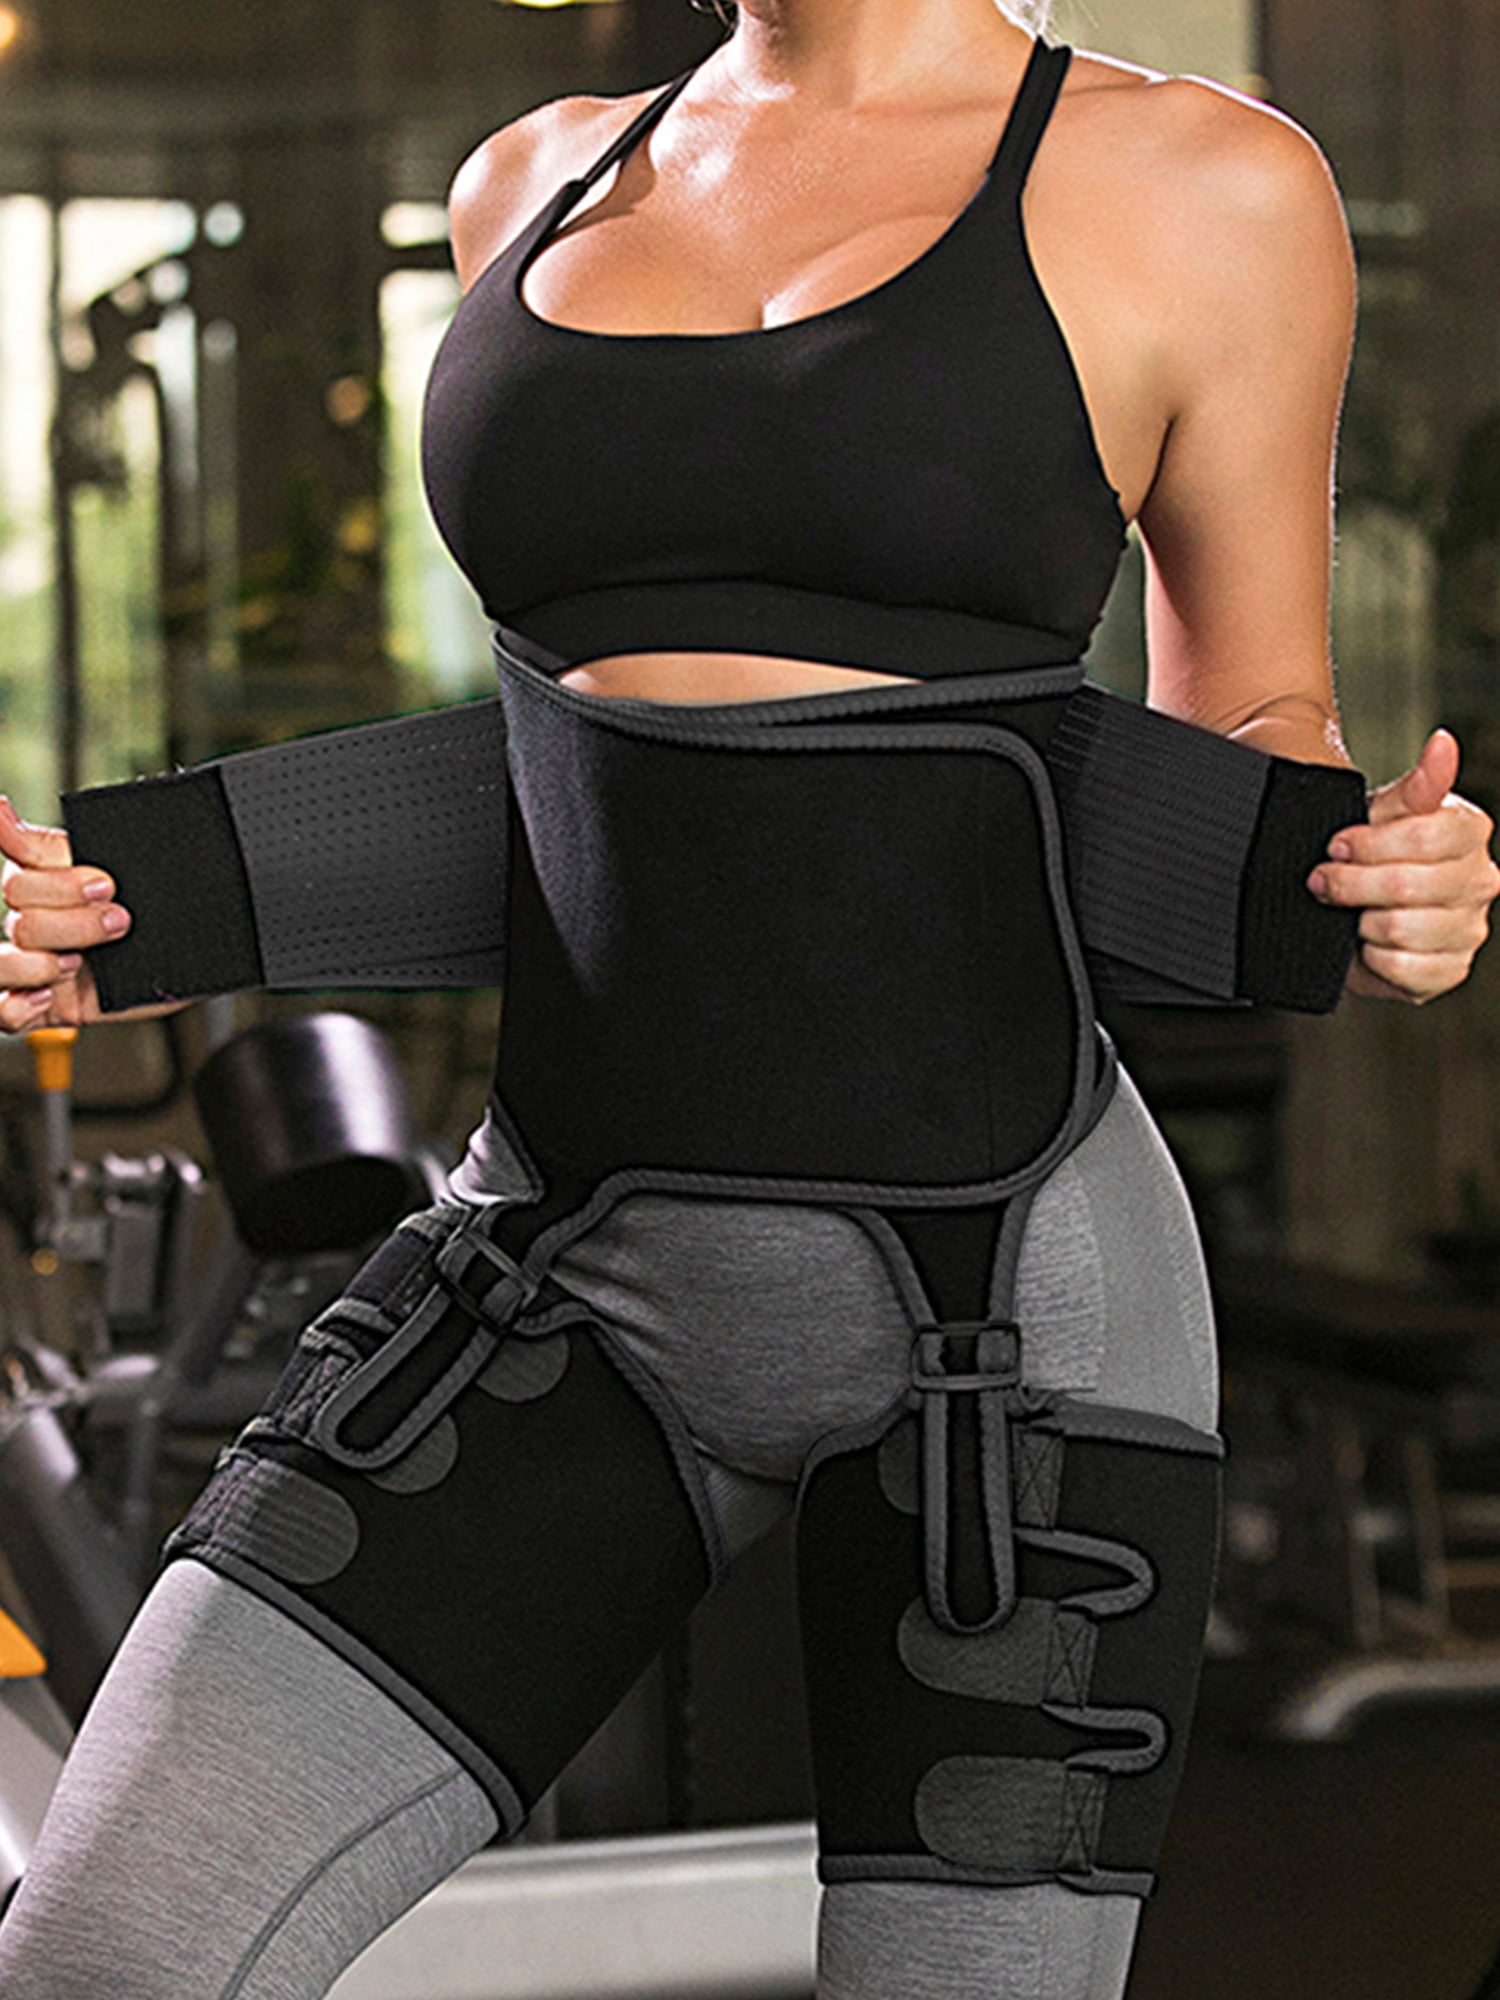 LUMENAIR 3 in 1 Adjustable Hip Enhancer Waist Trainer Butt Lifter Sport Shaper and Hips Belt High Waist Trimmers Thigh Trimmers for Women Body Shaper Waist Trainer Belt